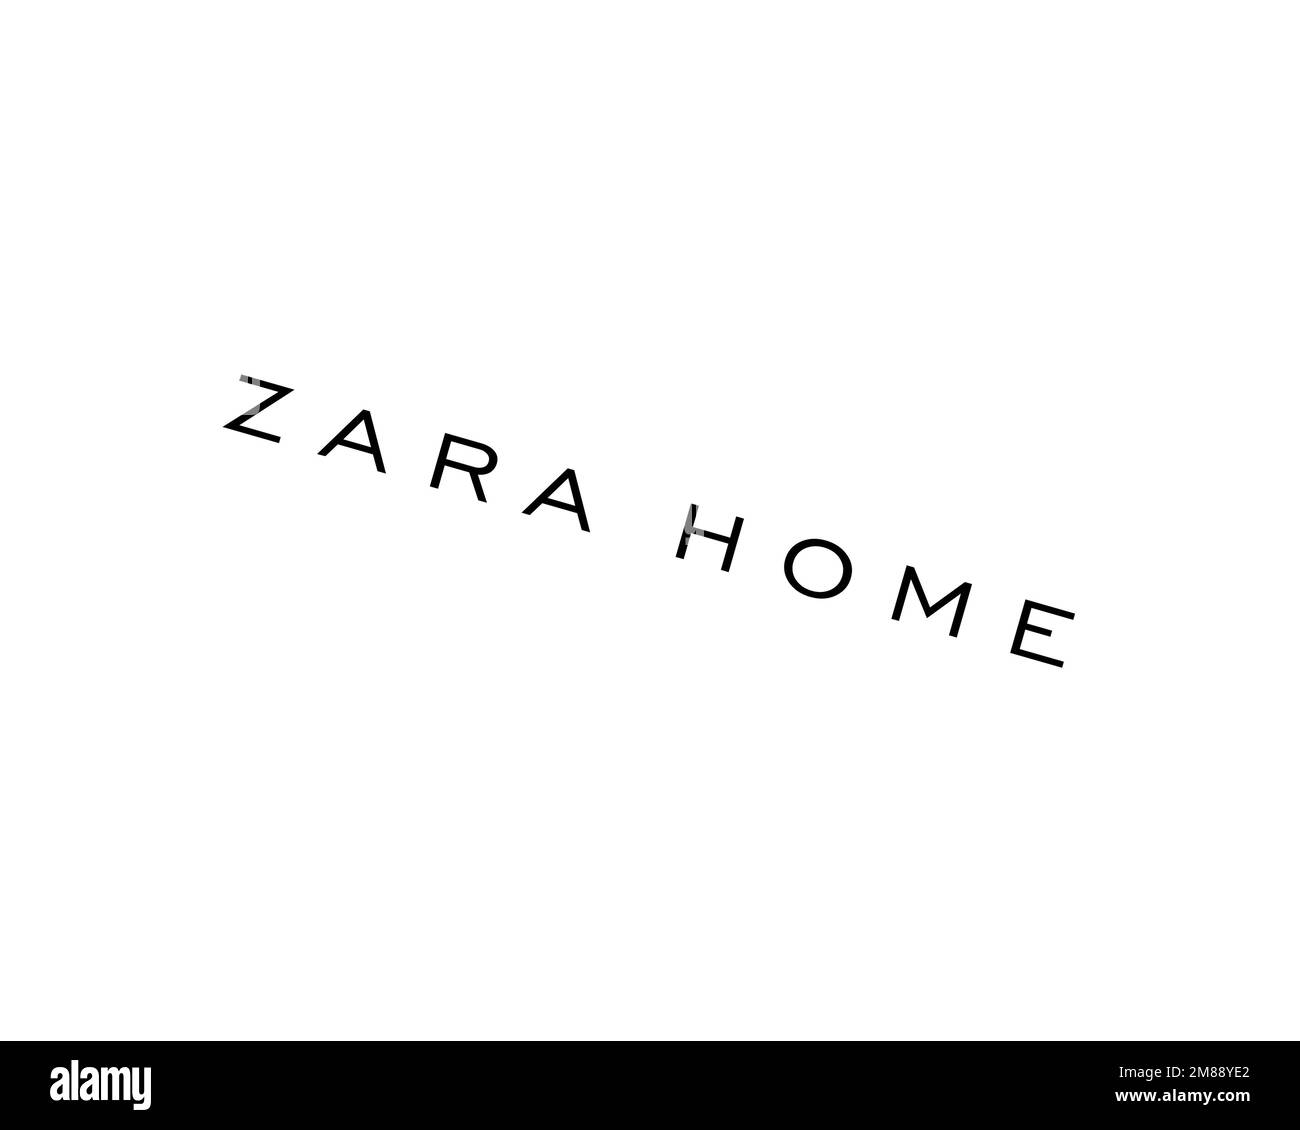 Zara Home, logo pivoté, arrière-plan blanc B Banque D'Images